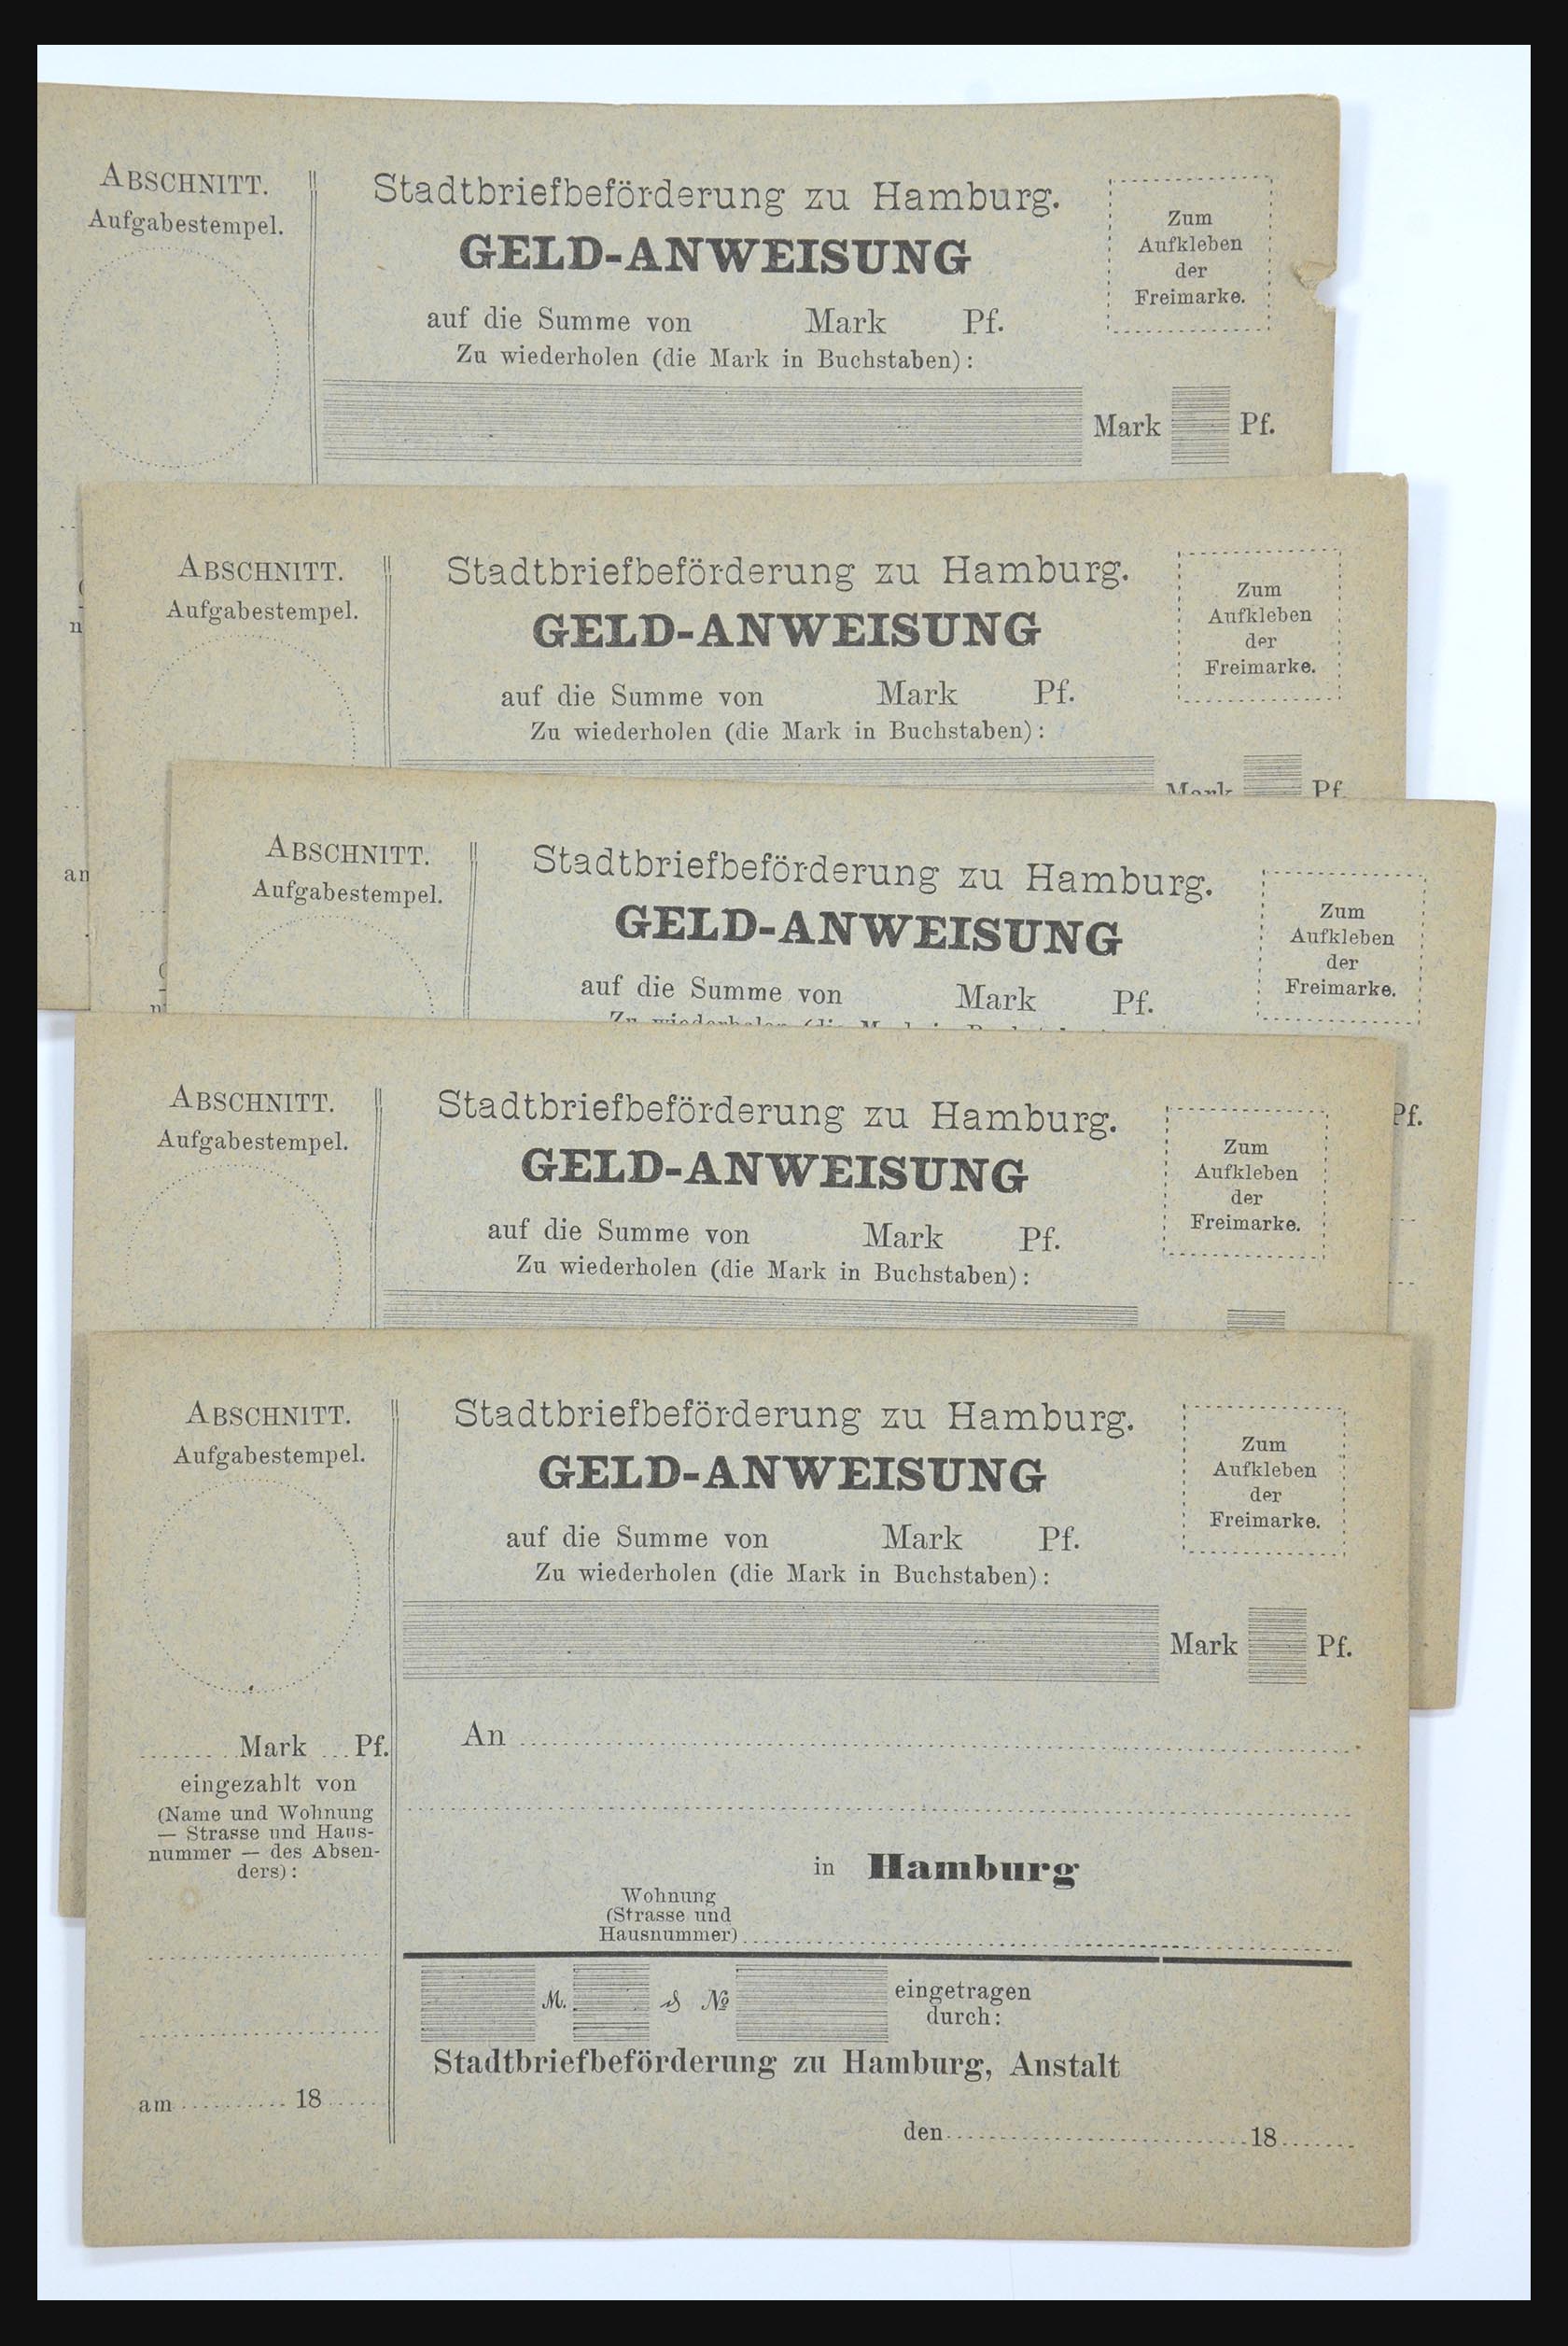 31578 260 - 31578 Germany localpost 1861-1900.